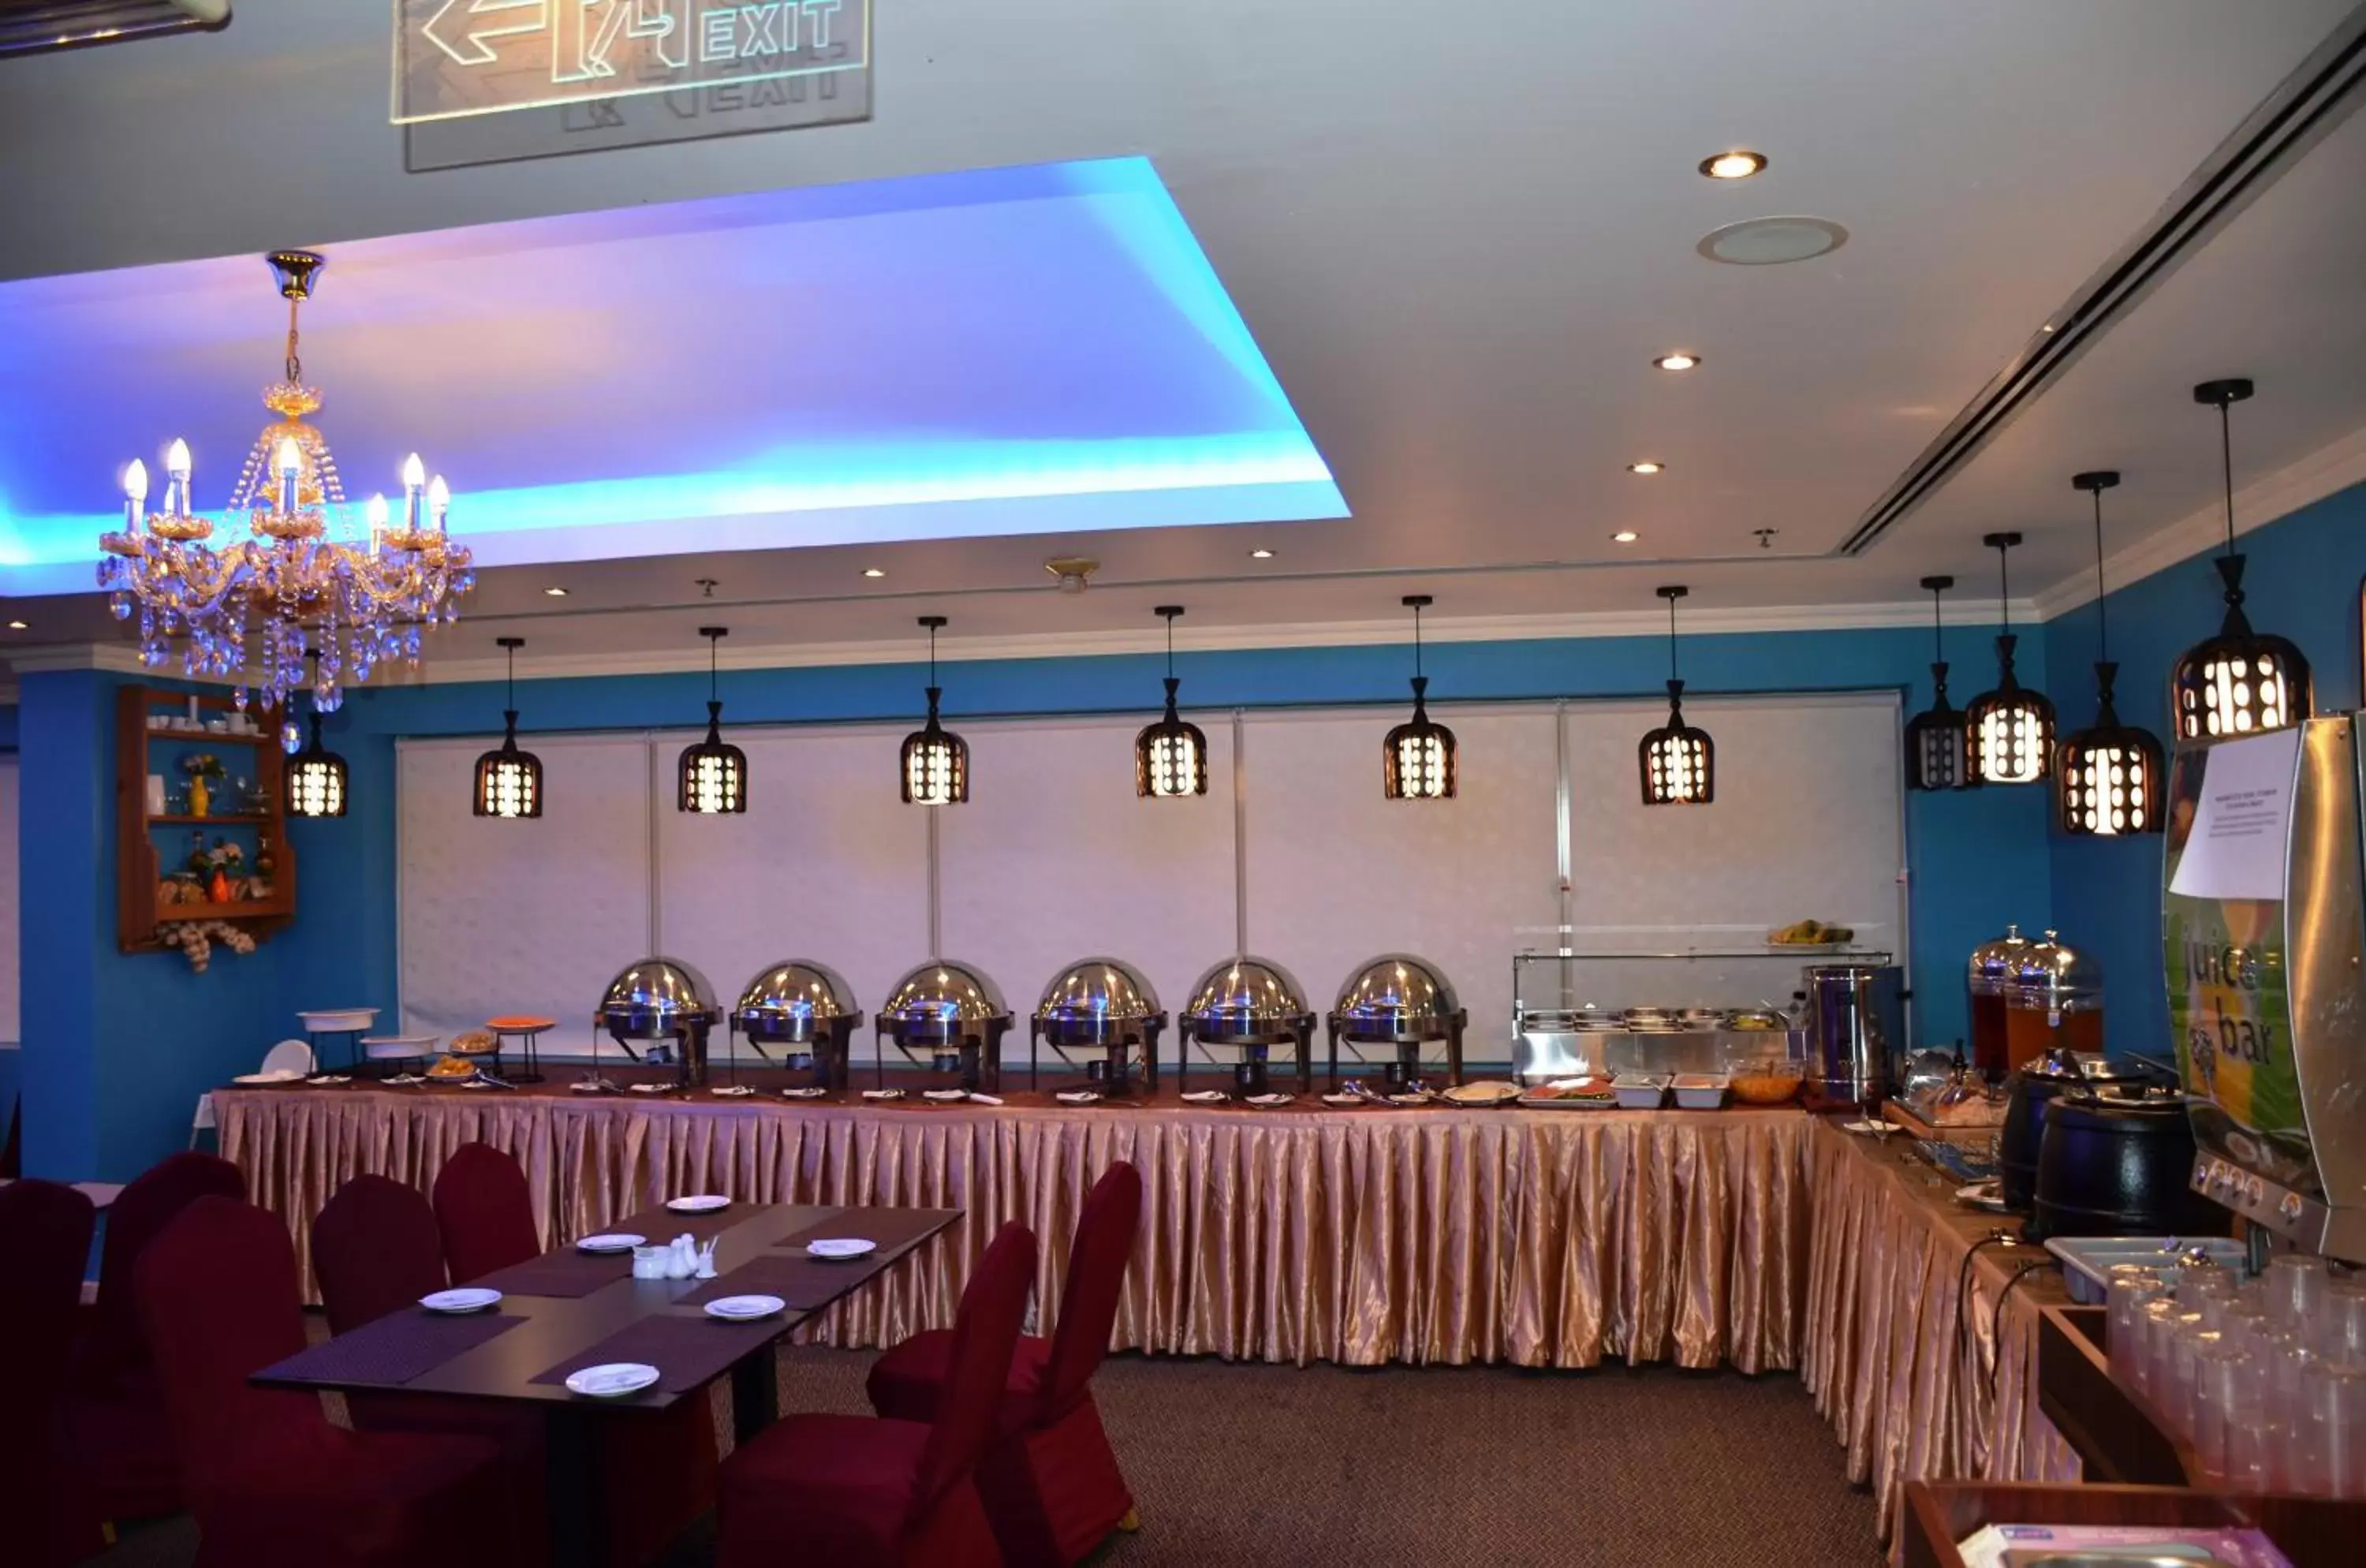 Restaurant/Places to Eat in Nejoum Al Emarat